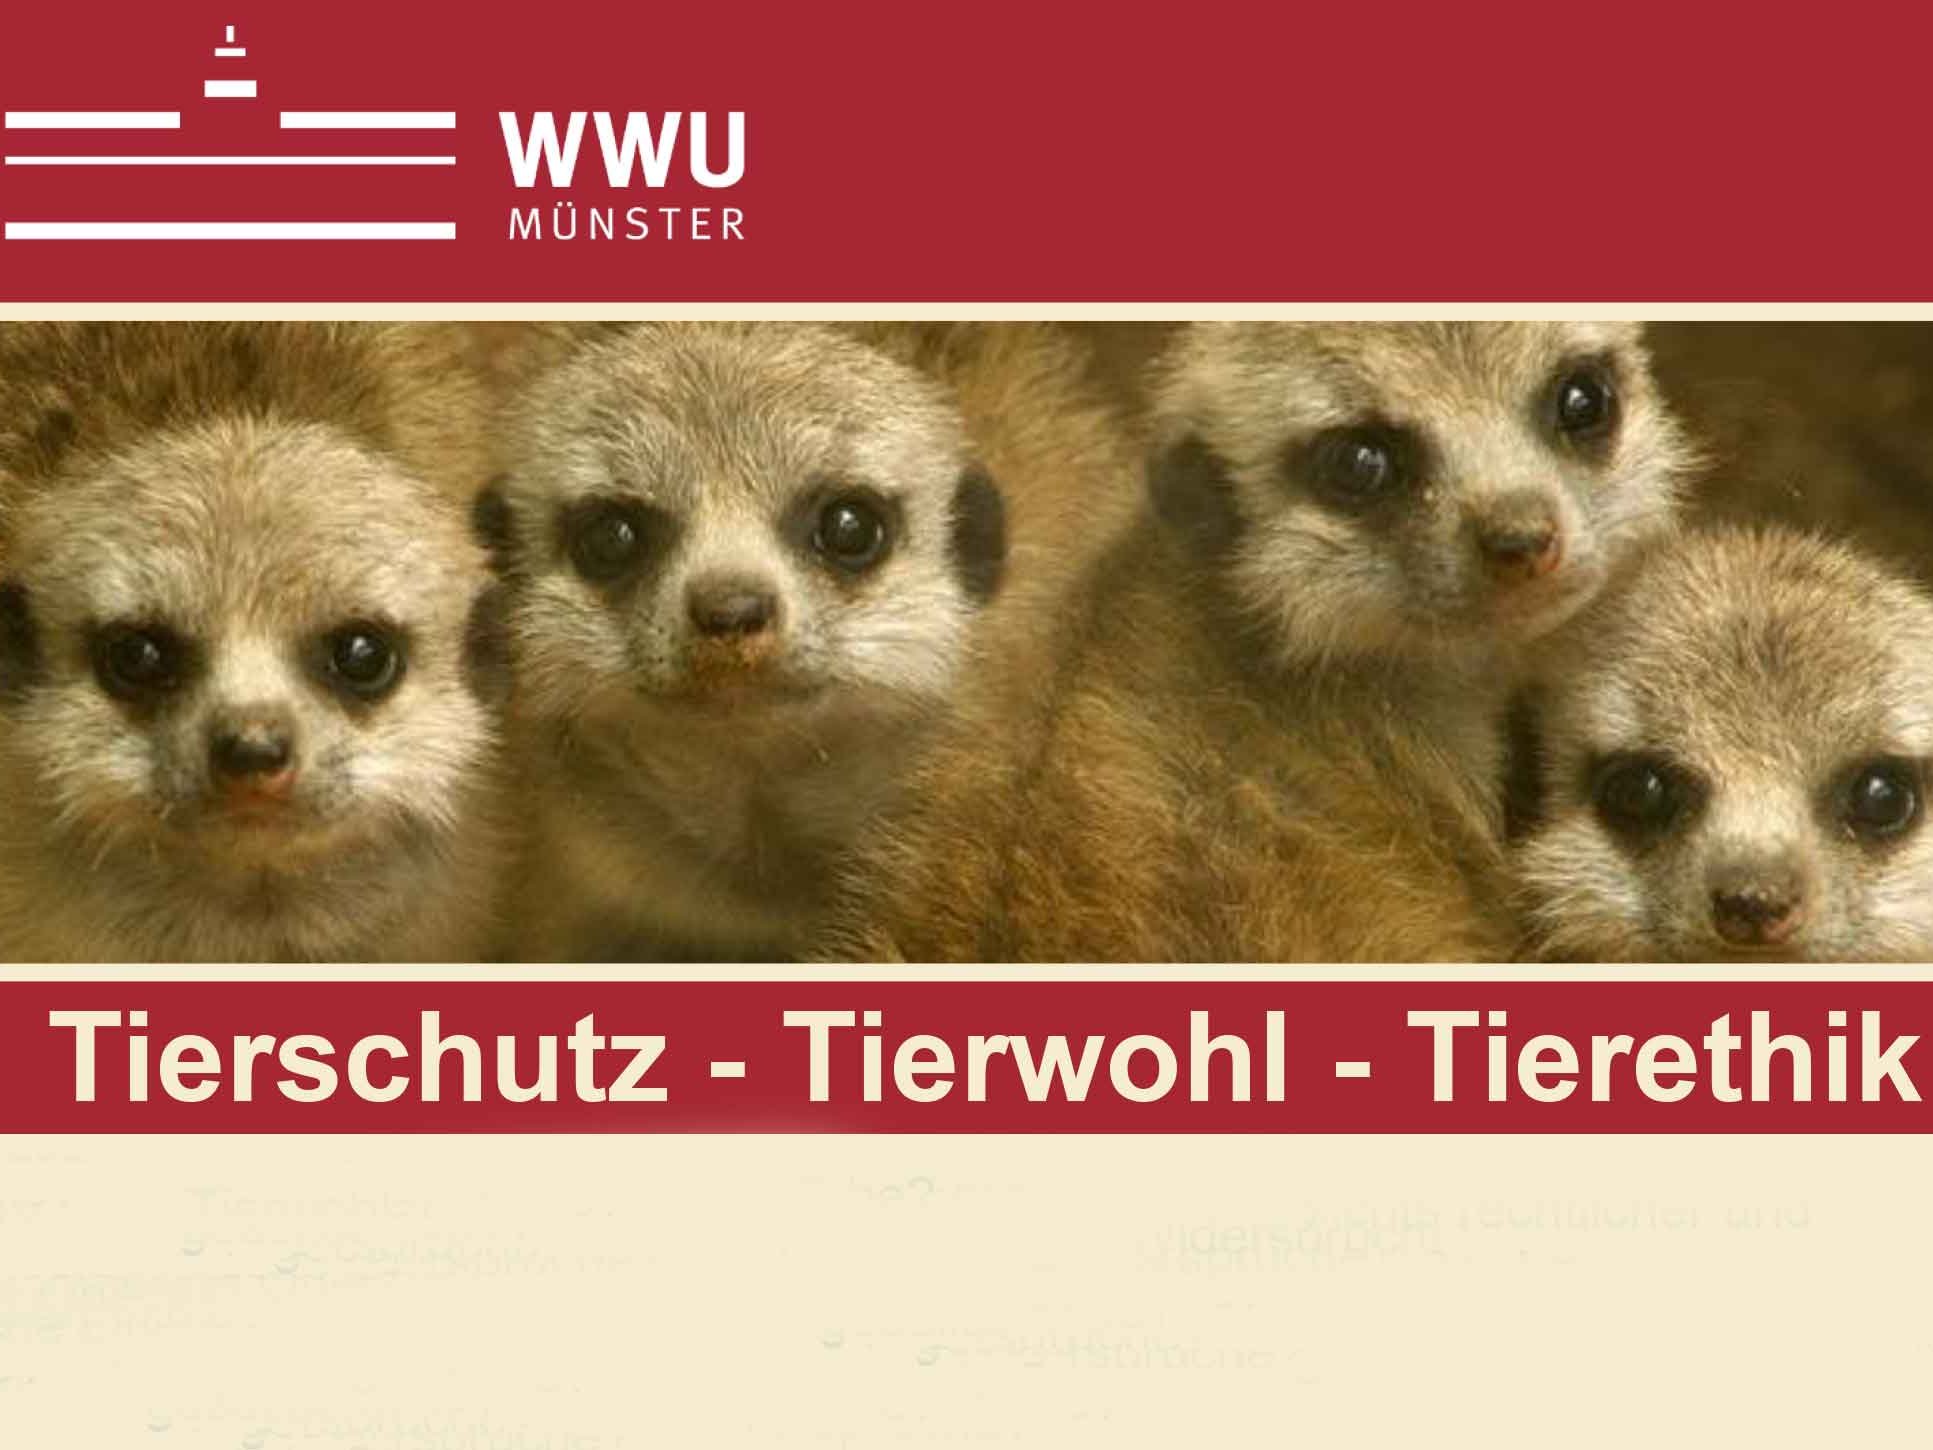 Vorlesungsreihe: Tierschutz - Tierwohl - Tierethik (WWU Münster)